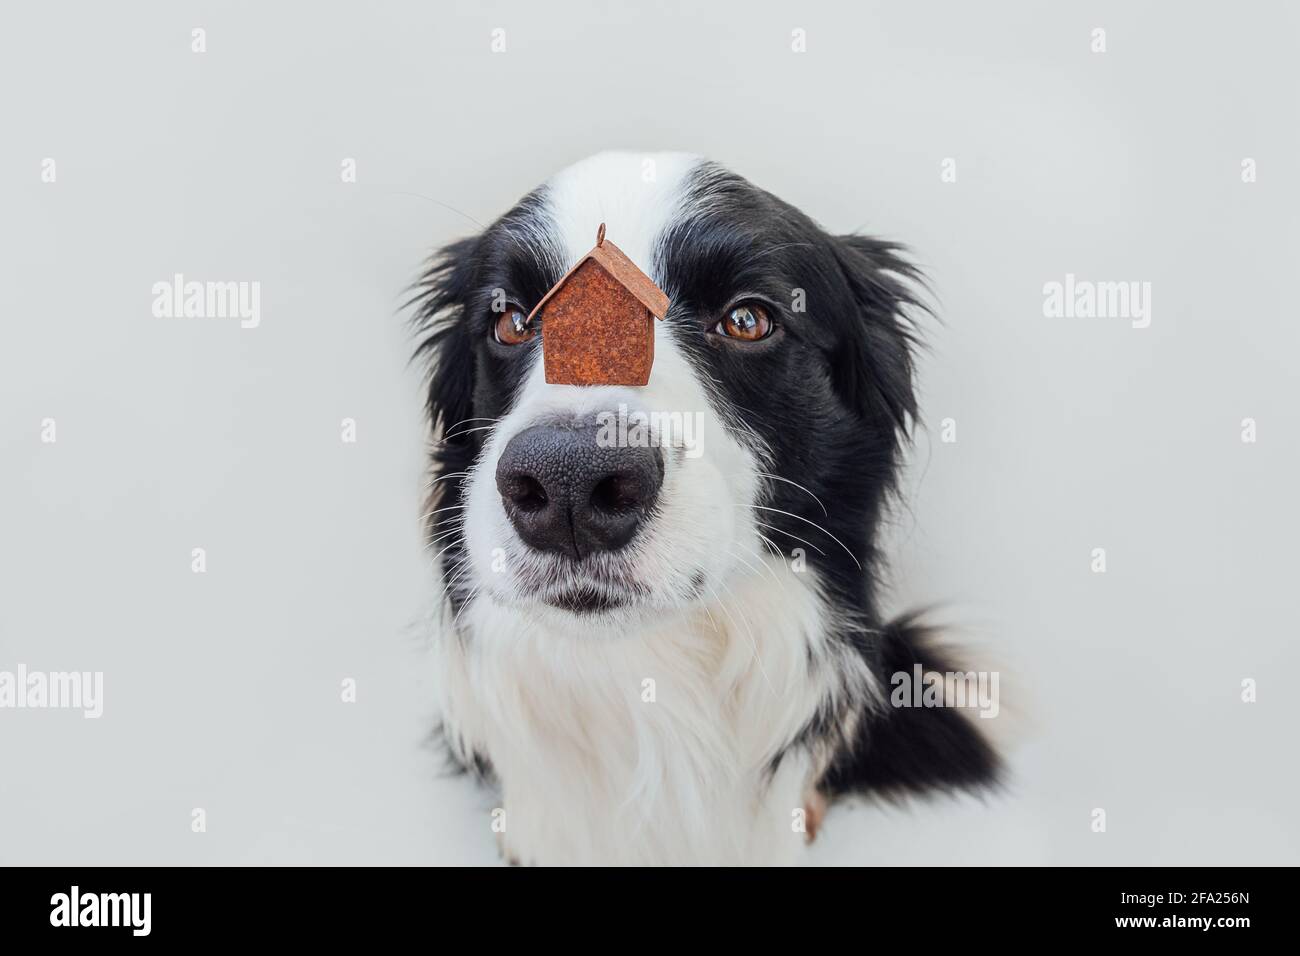 Lustige Porträt von niedlichen Welpen Hund Grenze Collie hält Miniatur-Spielzeug Modell Haus auf Nase isoliert auf weißem Hintergrund. Immobilien Hypothek Immobilien s Stockfoto